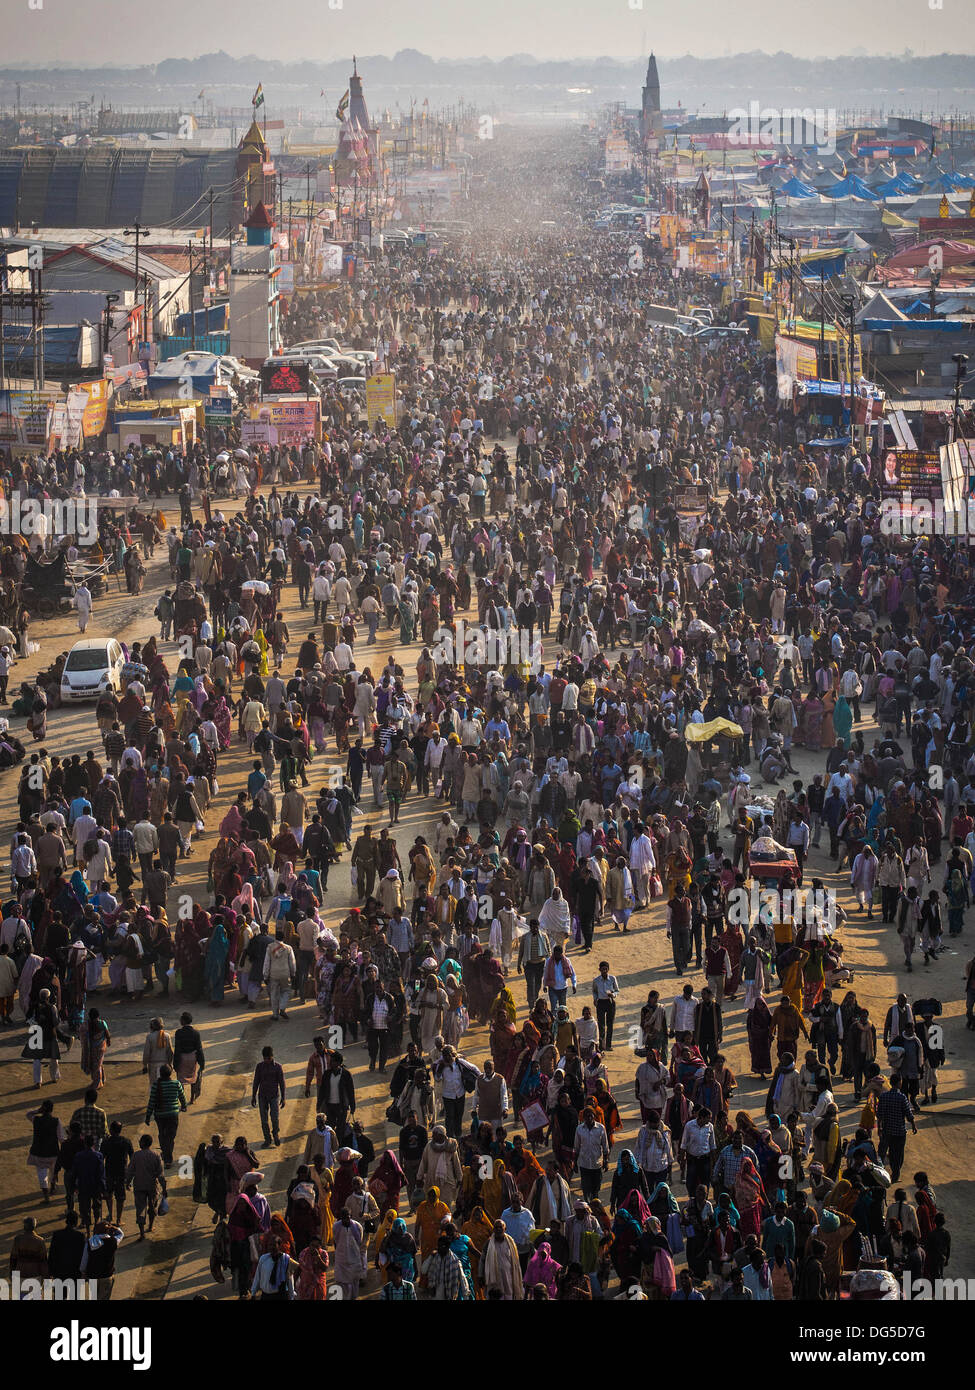 Vue aérienne de la foule à la festival Kumbh Mela, le plus grand rassemblement religieux, à Allahabad (Prayagraj), de l'Uttar Pradesh, Inde. Banque D'Images